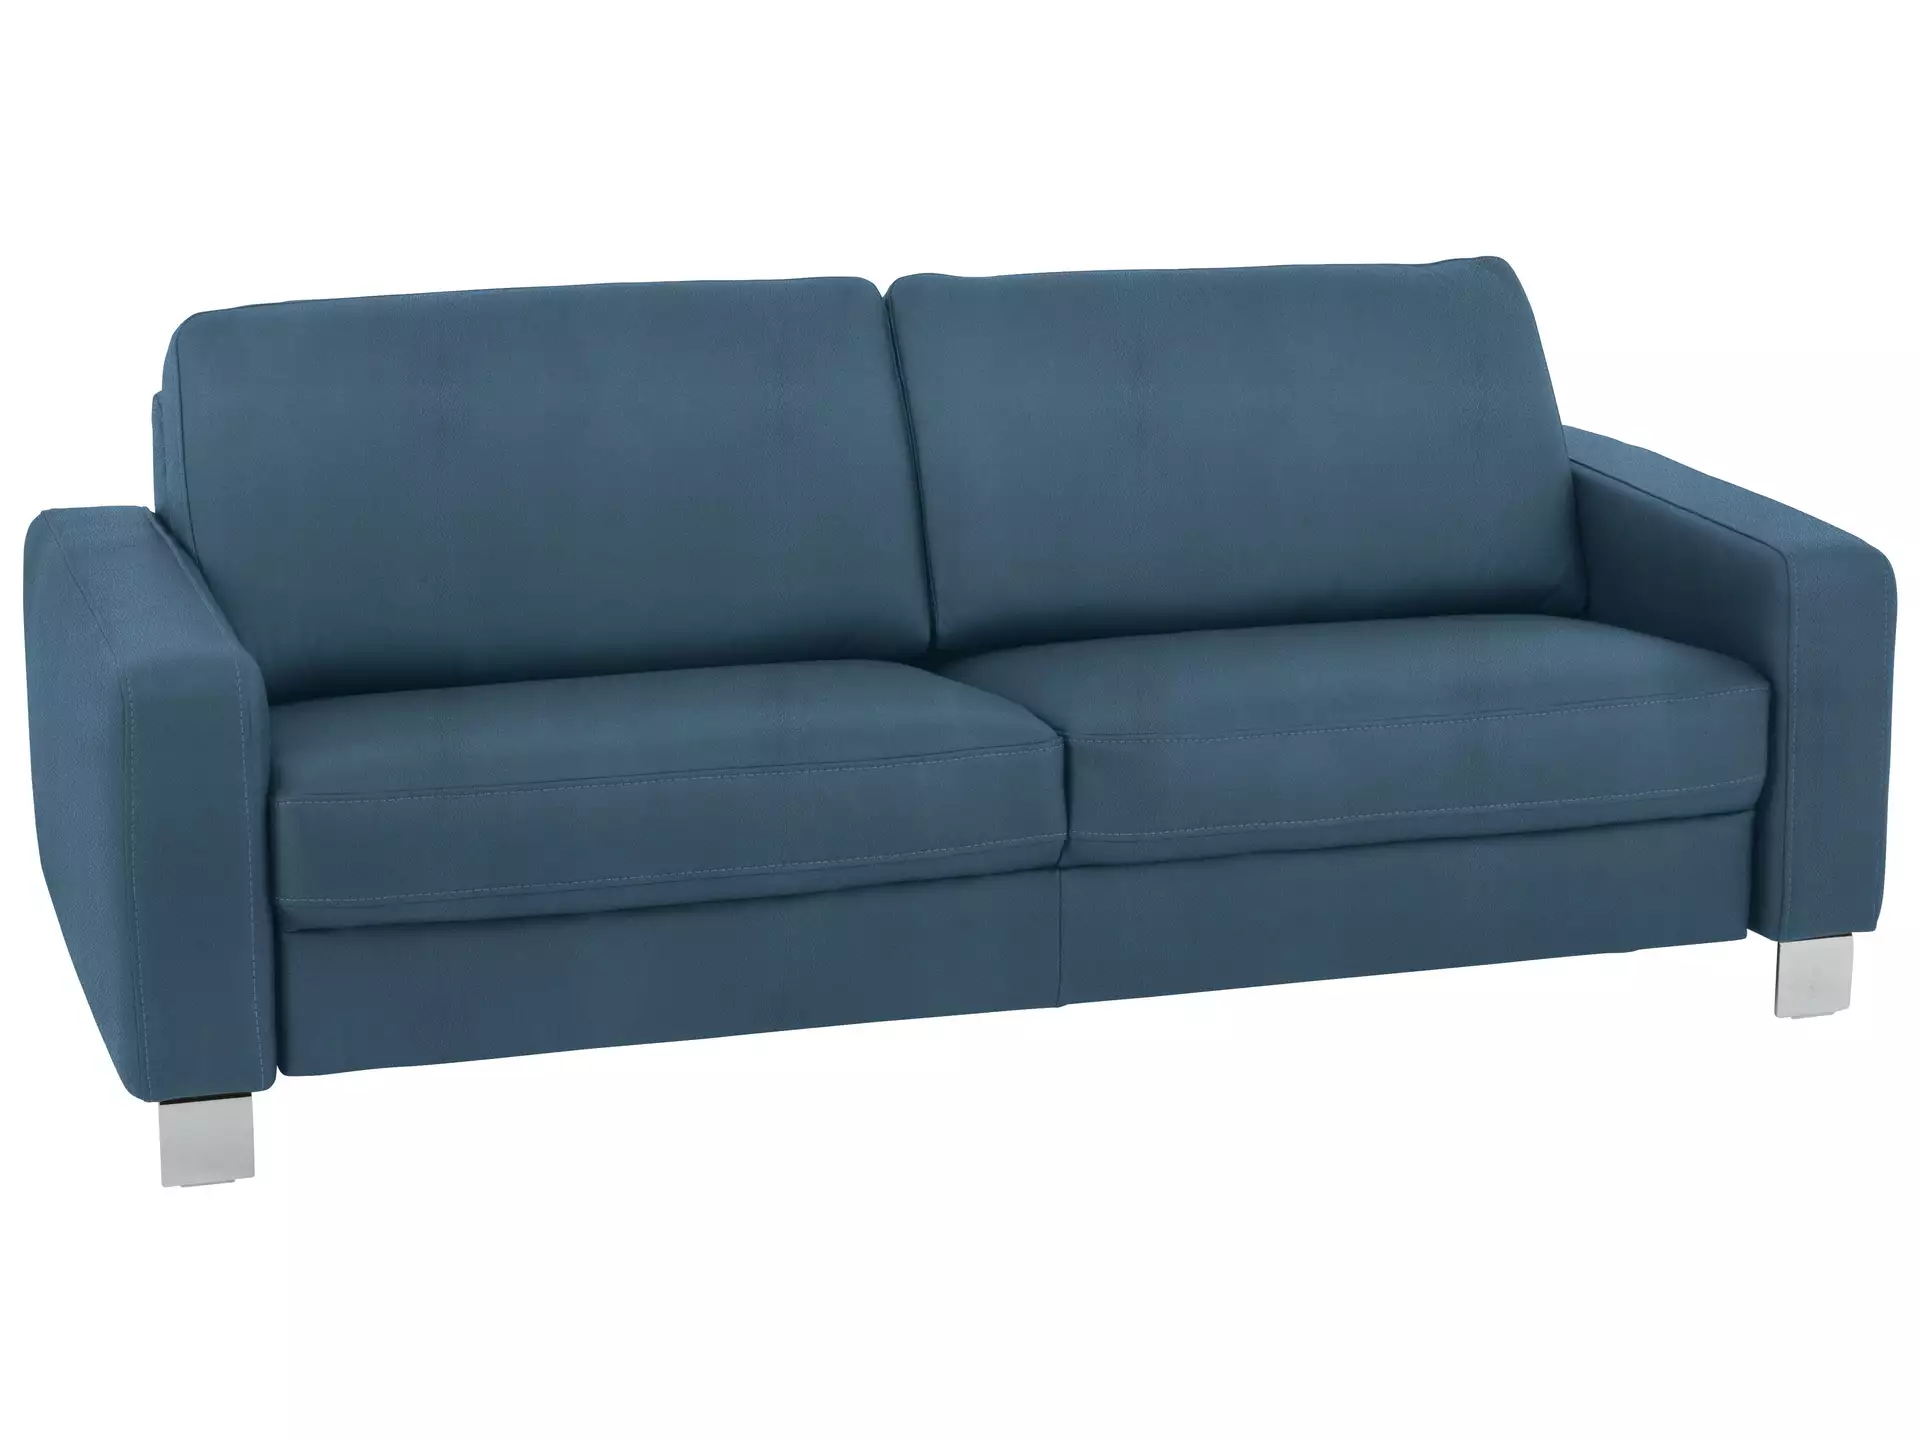 Sofa Shetland Basic B: 214 cm Polipol / Farbe: Ocean / Material: Leder Basic